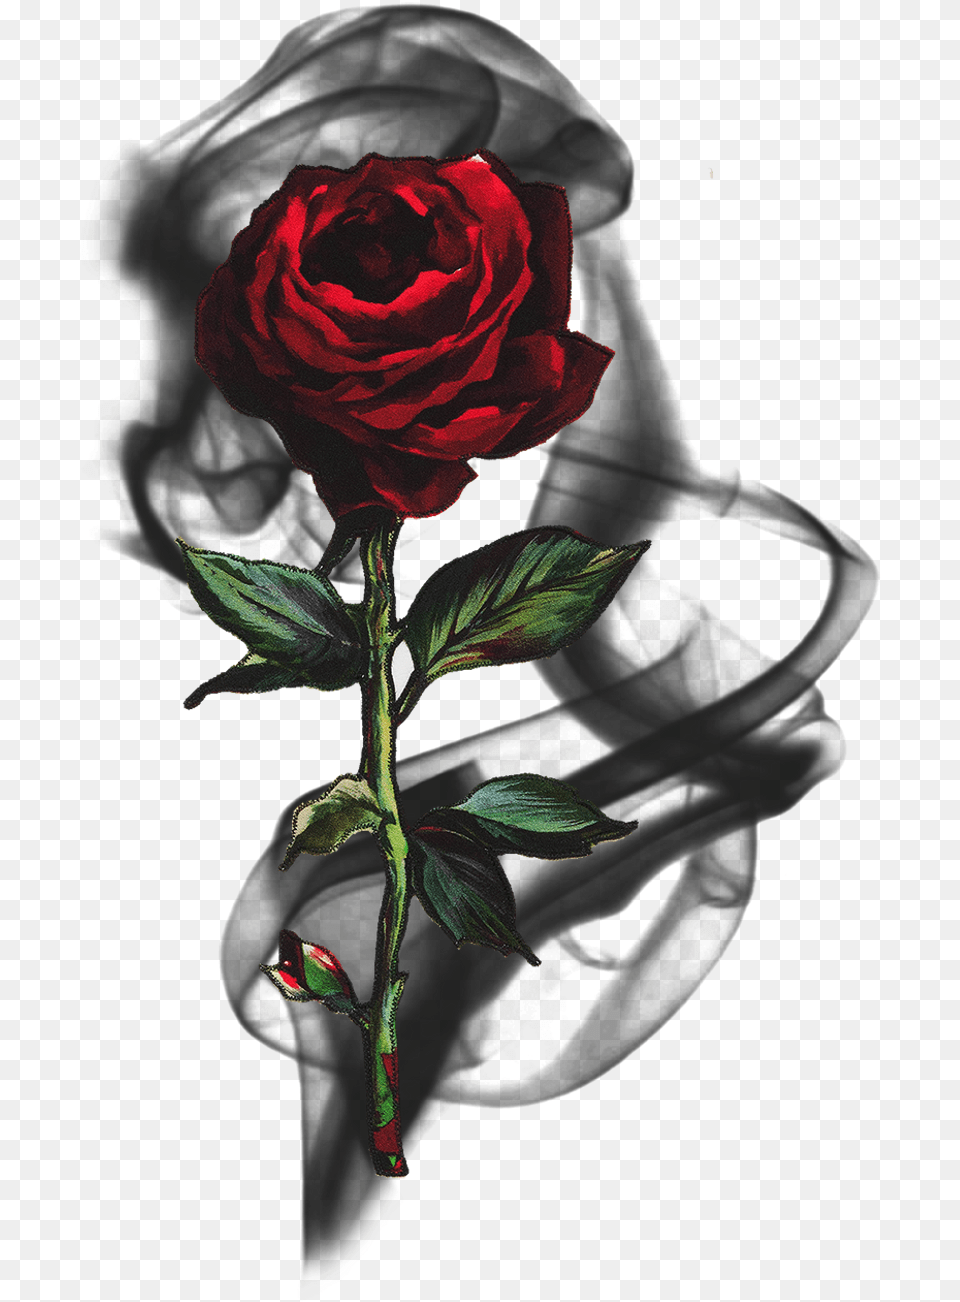 Rose Smoke Blackrose Rosesmoke Flowersmoke Black Red Rose, Flower, Plant Png Image